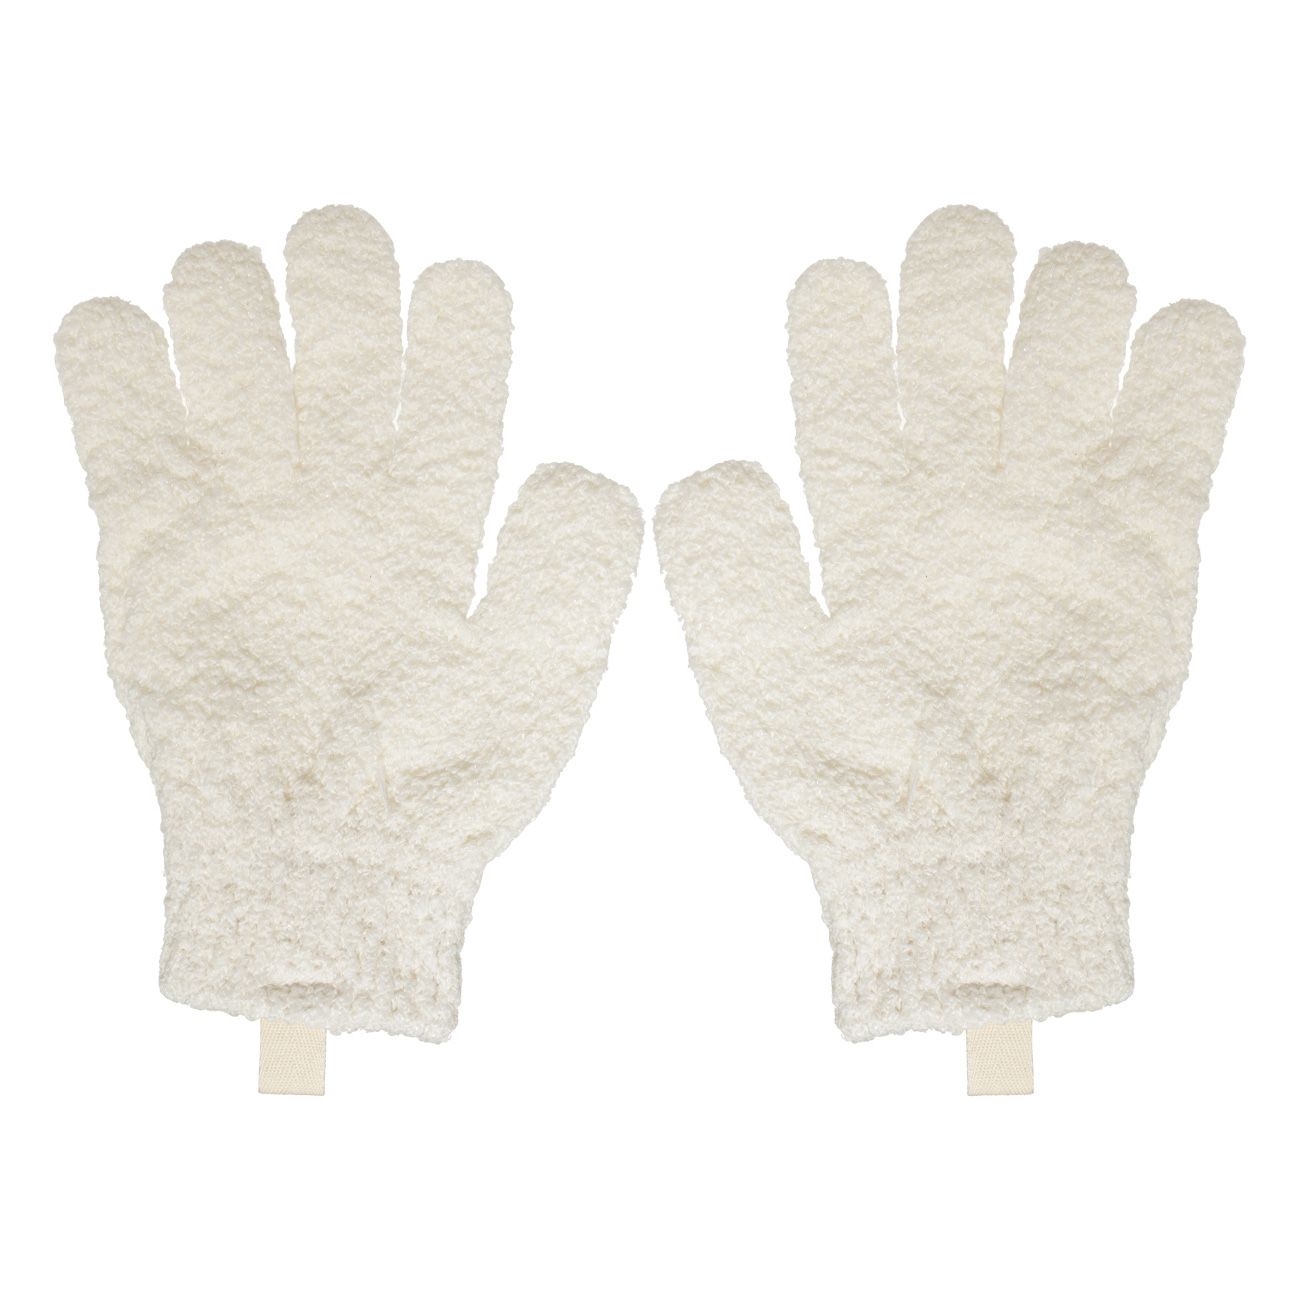 Перчатка для мытья тела Kuchenland отшелушивающая, полиэстер, молочная, 21 см, 2 шт ванна отшелушивающая перчатка скраб перчатки душ скруббер омертвеющая кожа удаление унисекс